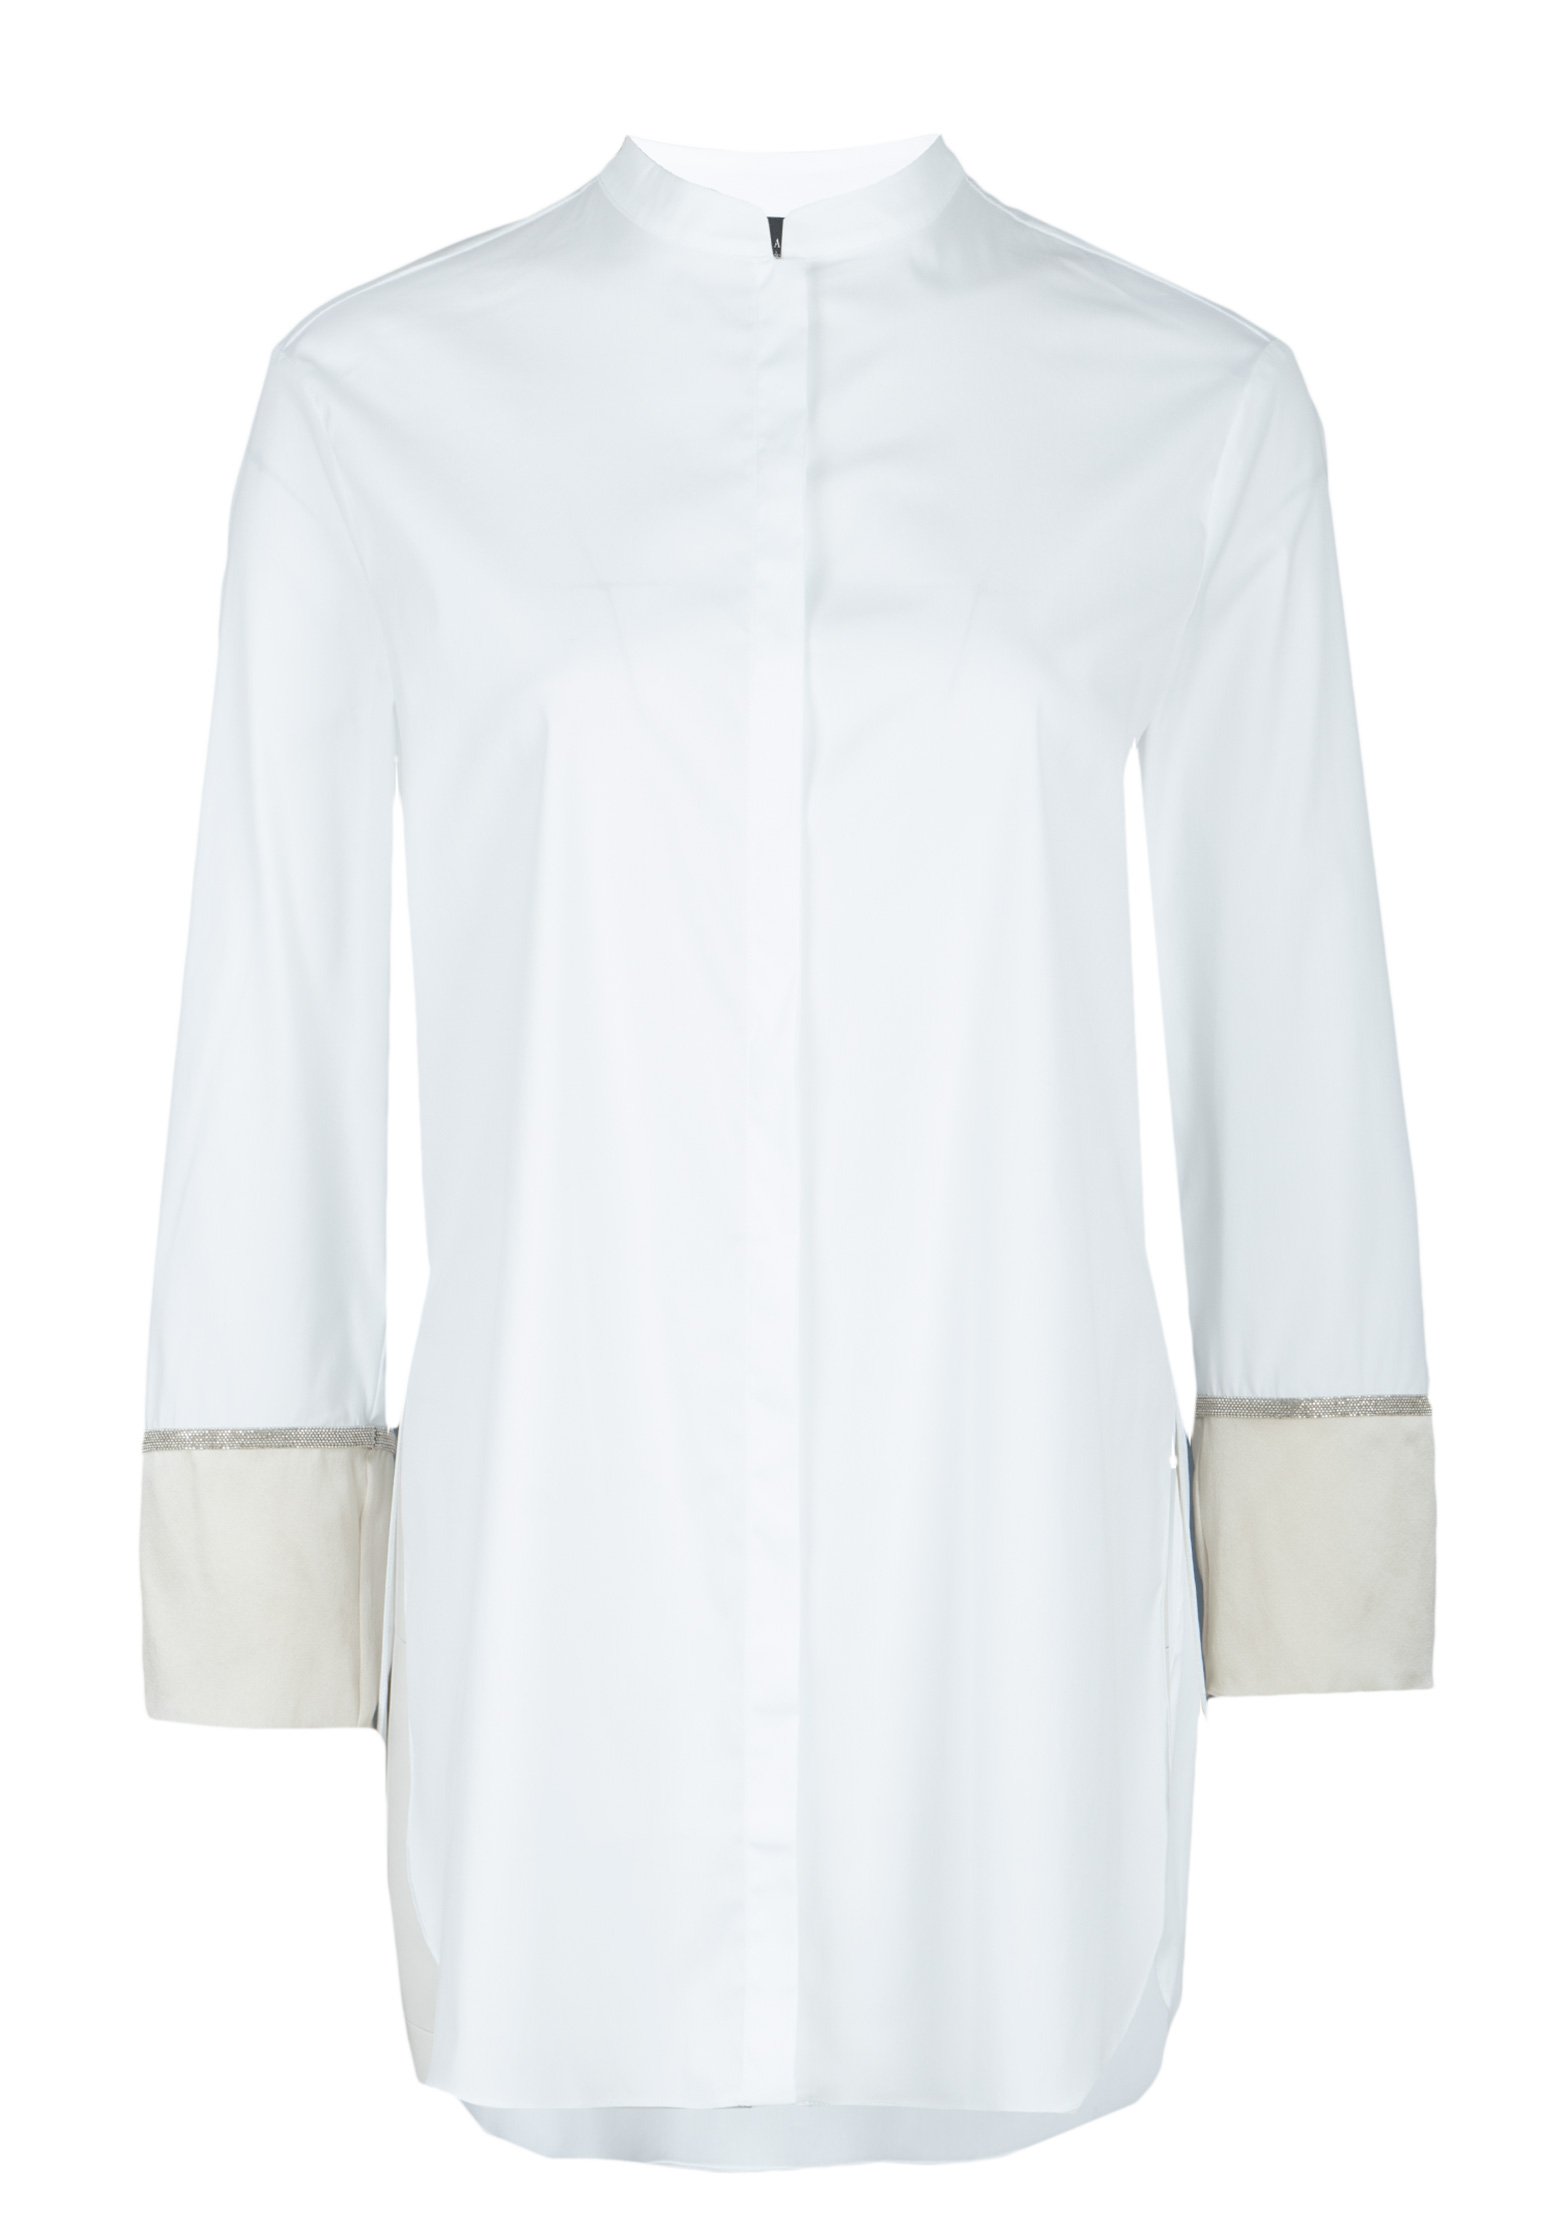 Рубашка женская FABIANA FILIPPI 116352 белая 44 IT